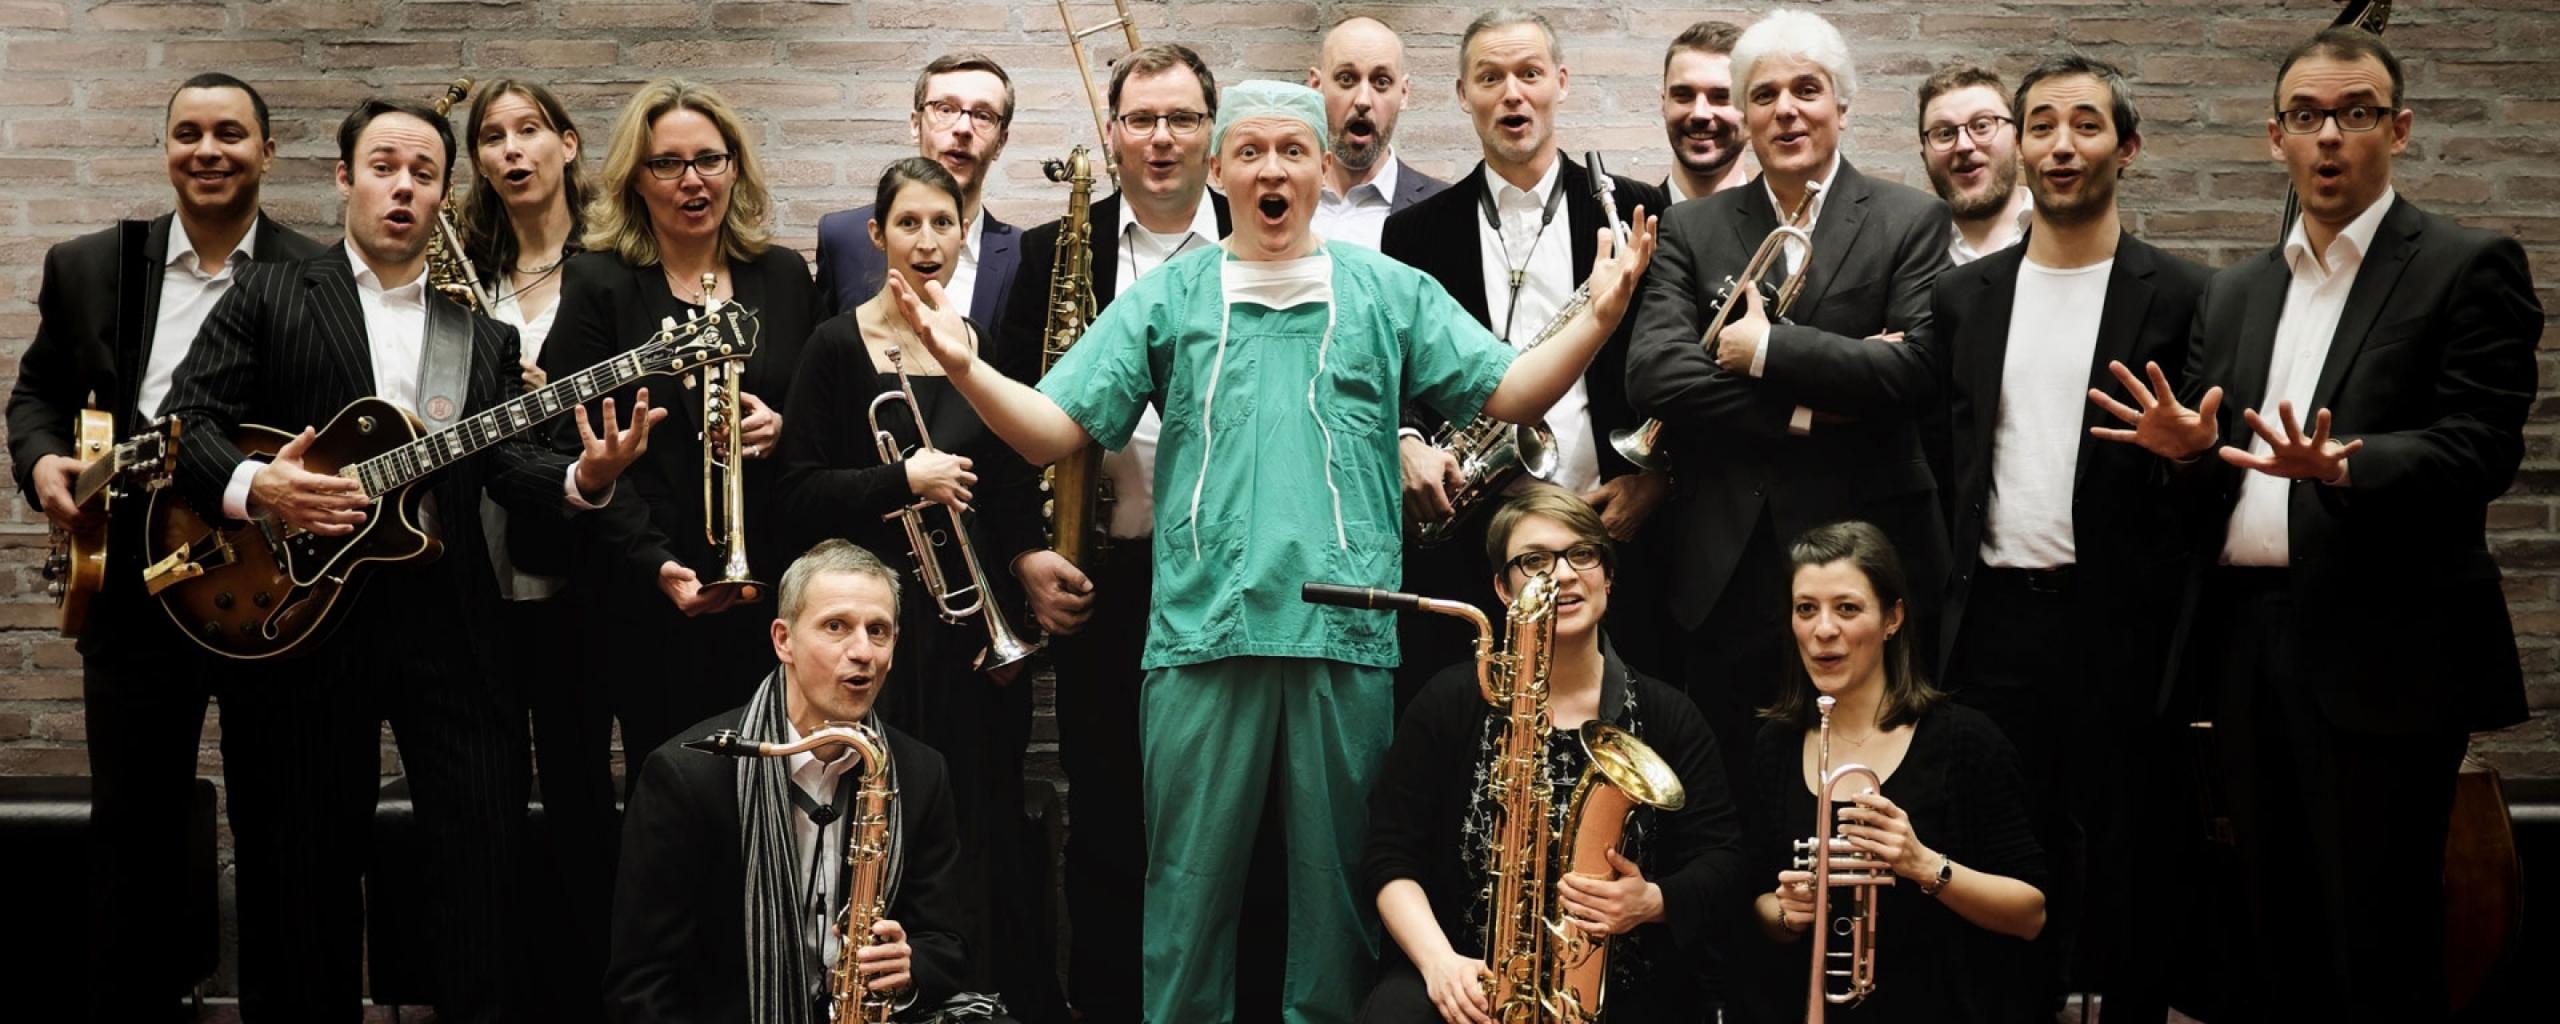 In der Mitte einer Gruppe von schwarz gekleideten Musiker*innen steht ein Arzt in grüner OP-Kleidung mit einem erstaunten Gesichtsausdruck.